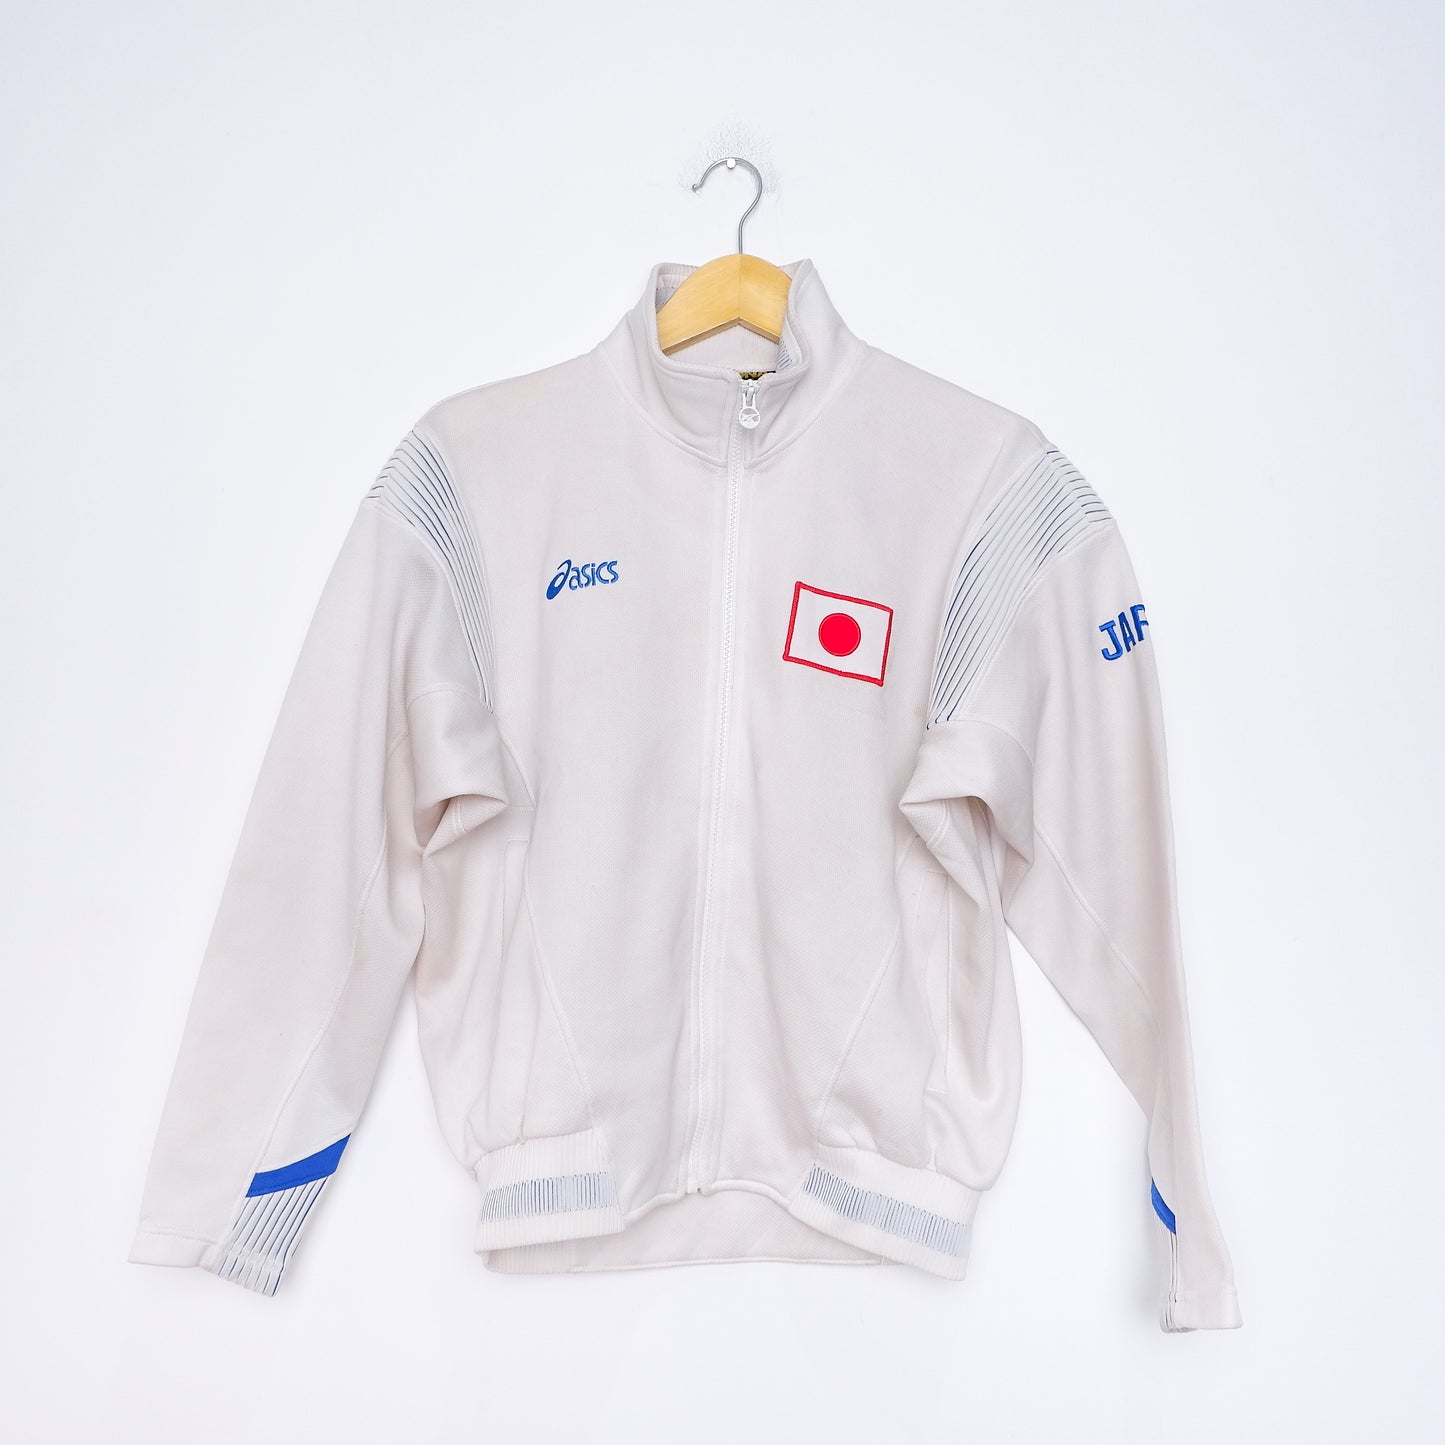 Authentic Japan Jacket 90's - Size L (JASPO) fit M